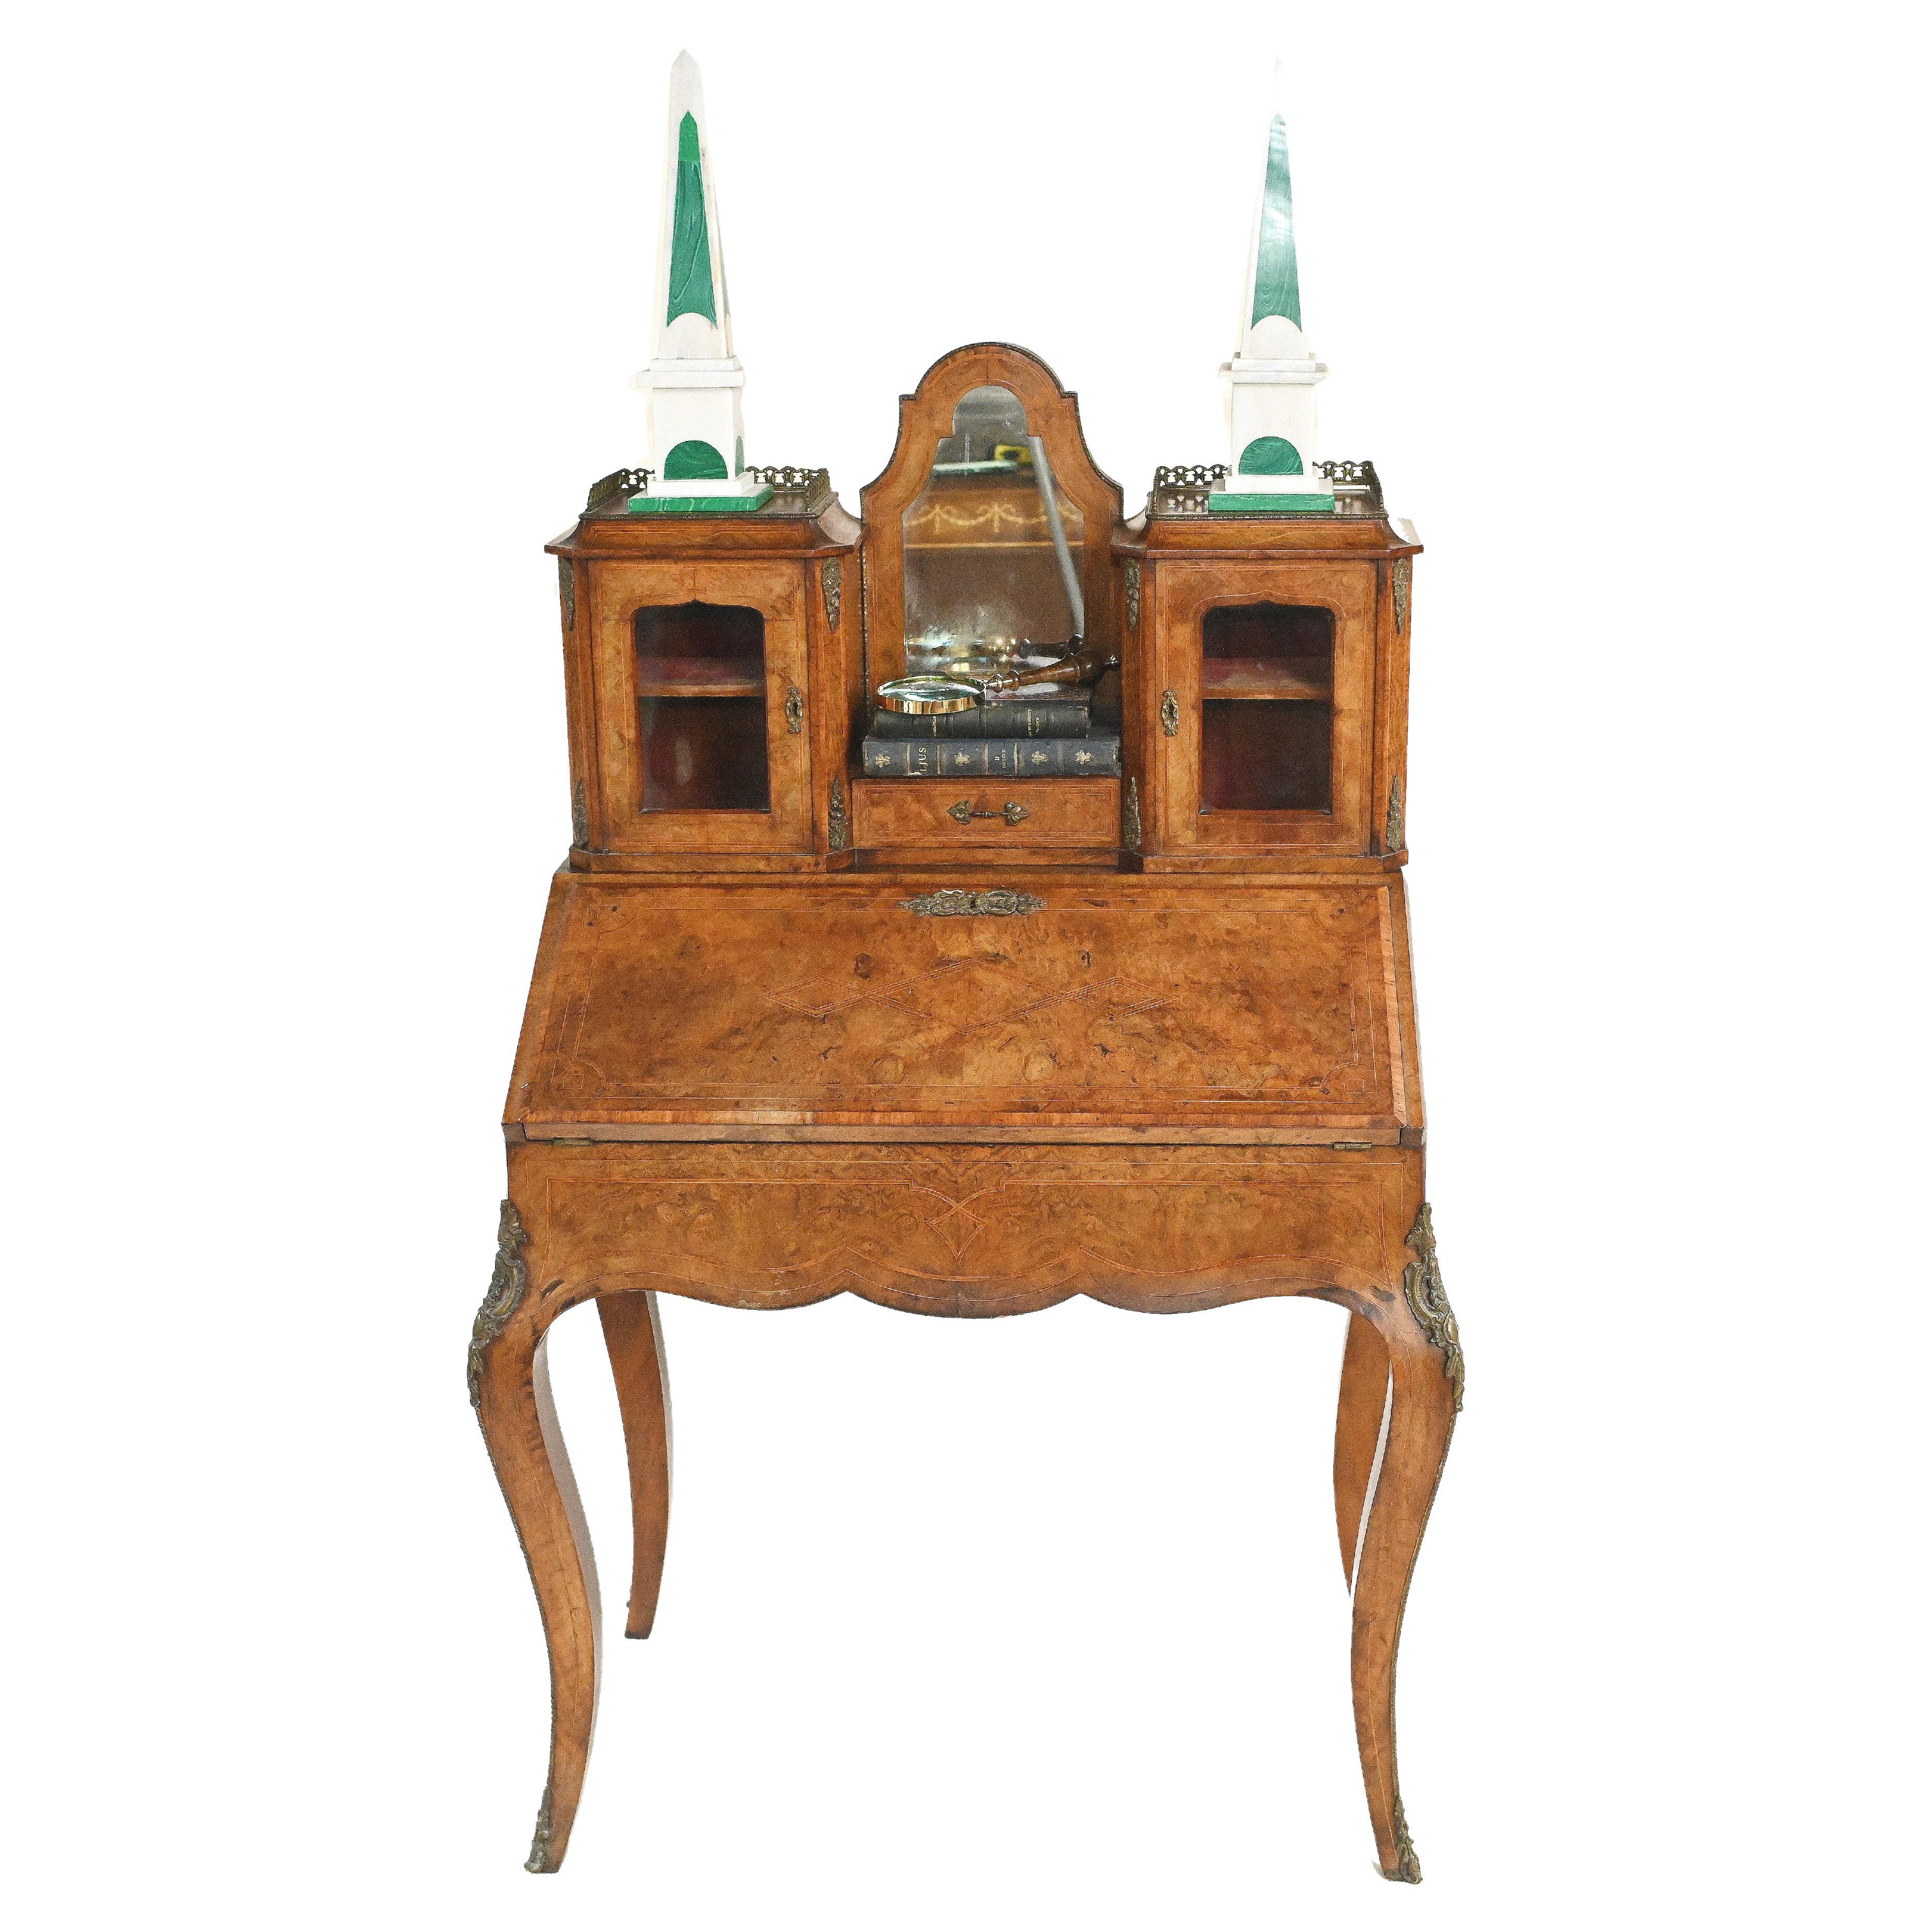 Antique French Desk, Walnut Bonheur De Jour Ladies Desk circa 1880 For Sale